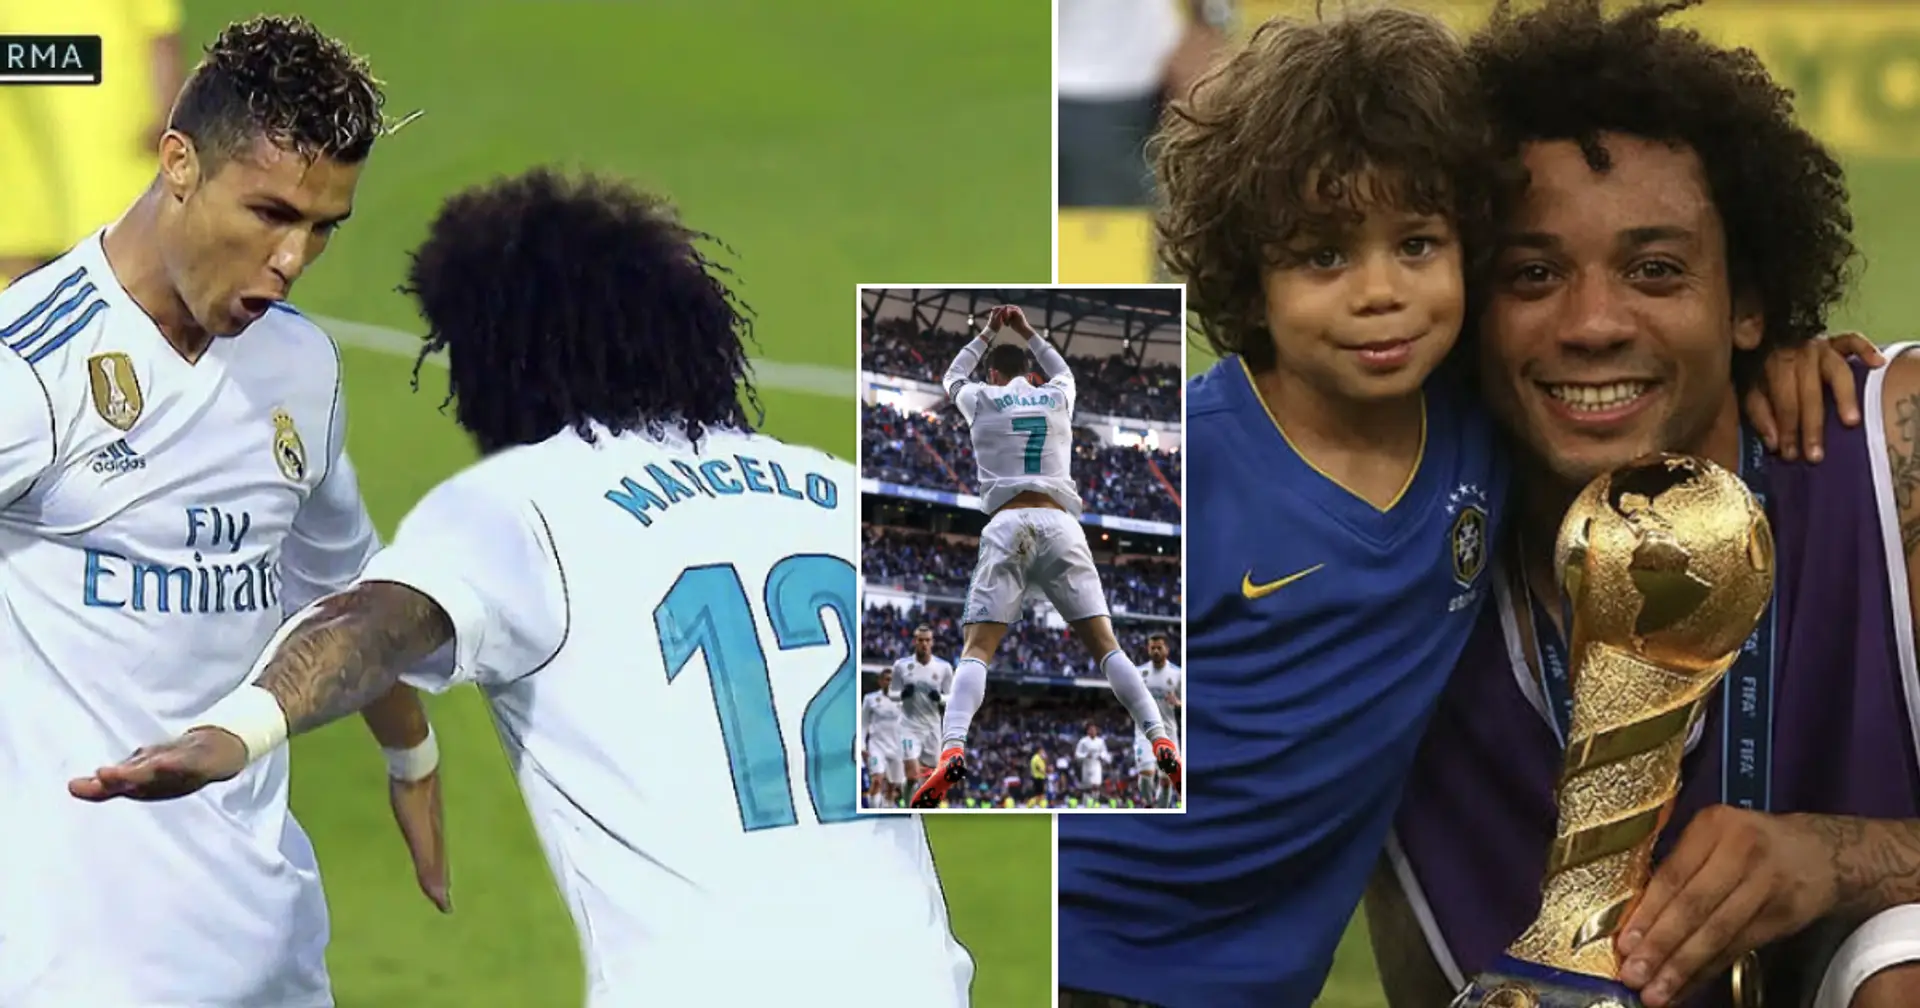 Pris en photo: le fils de Marcelo, Enzo, reproduit la célébration emblématique de Ronaldo lors de sa cérémonie de remise des diplômes